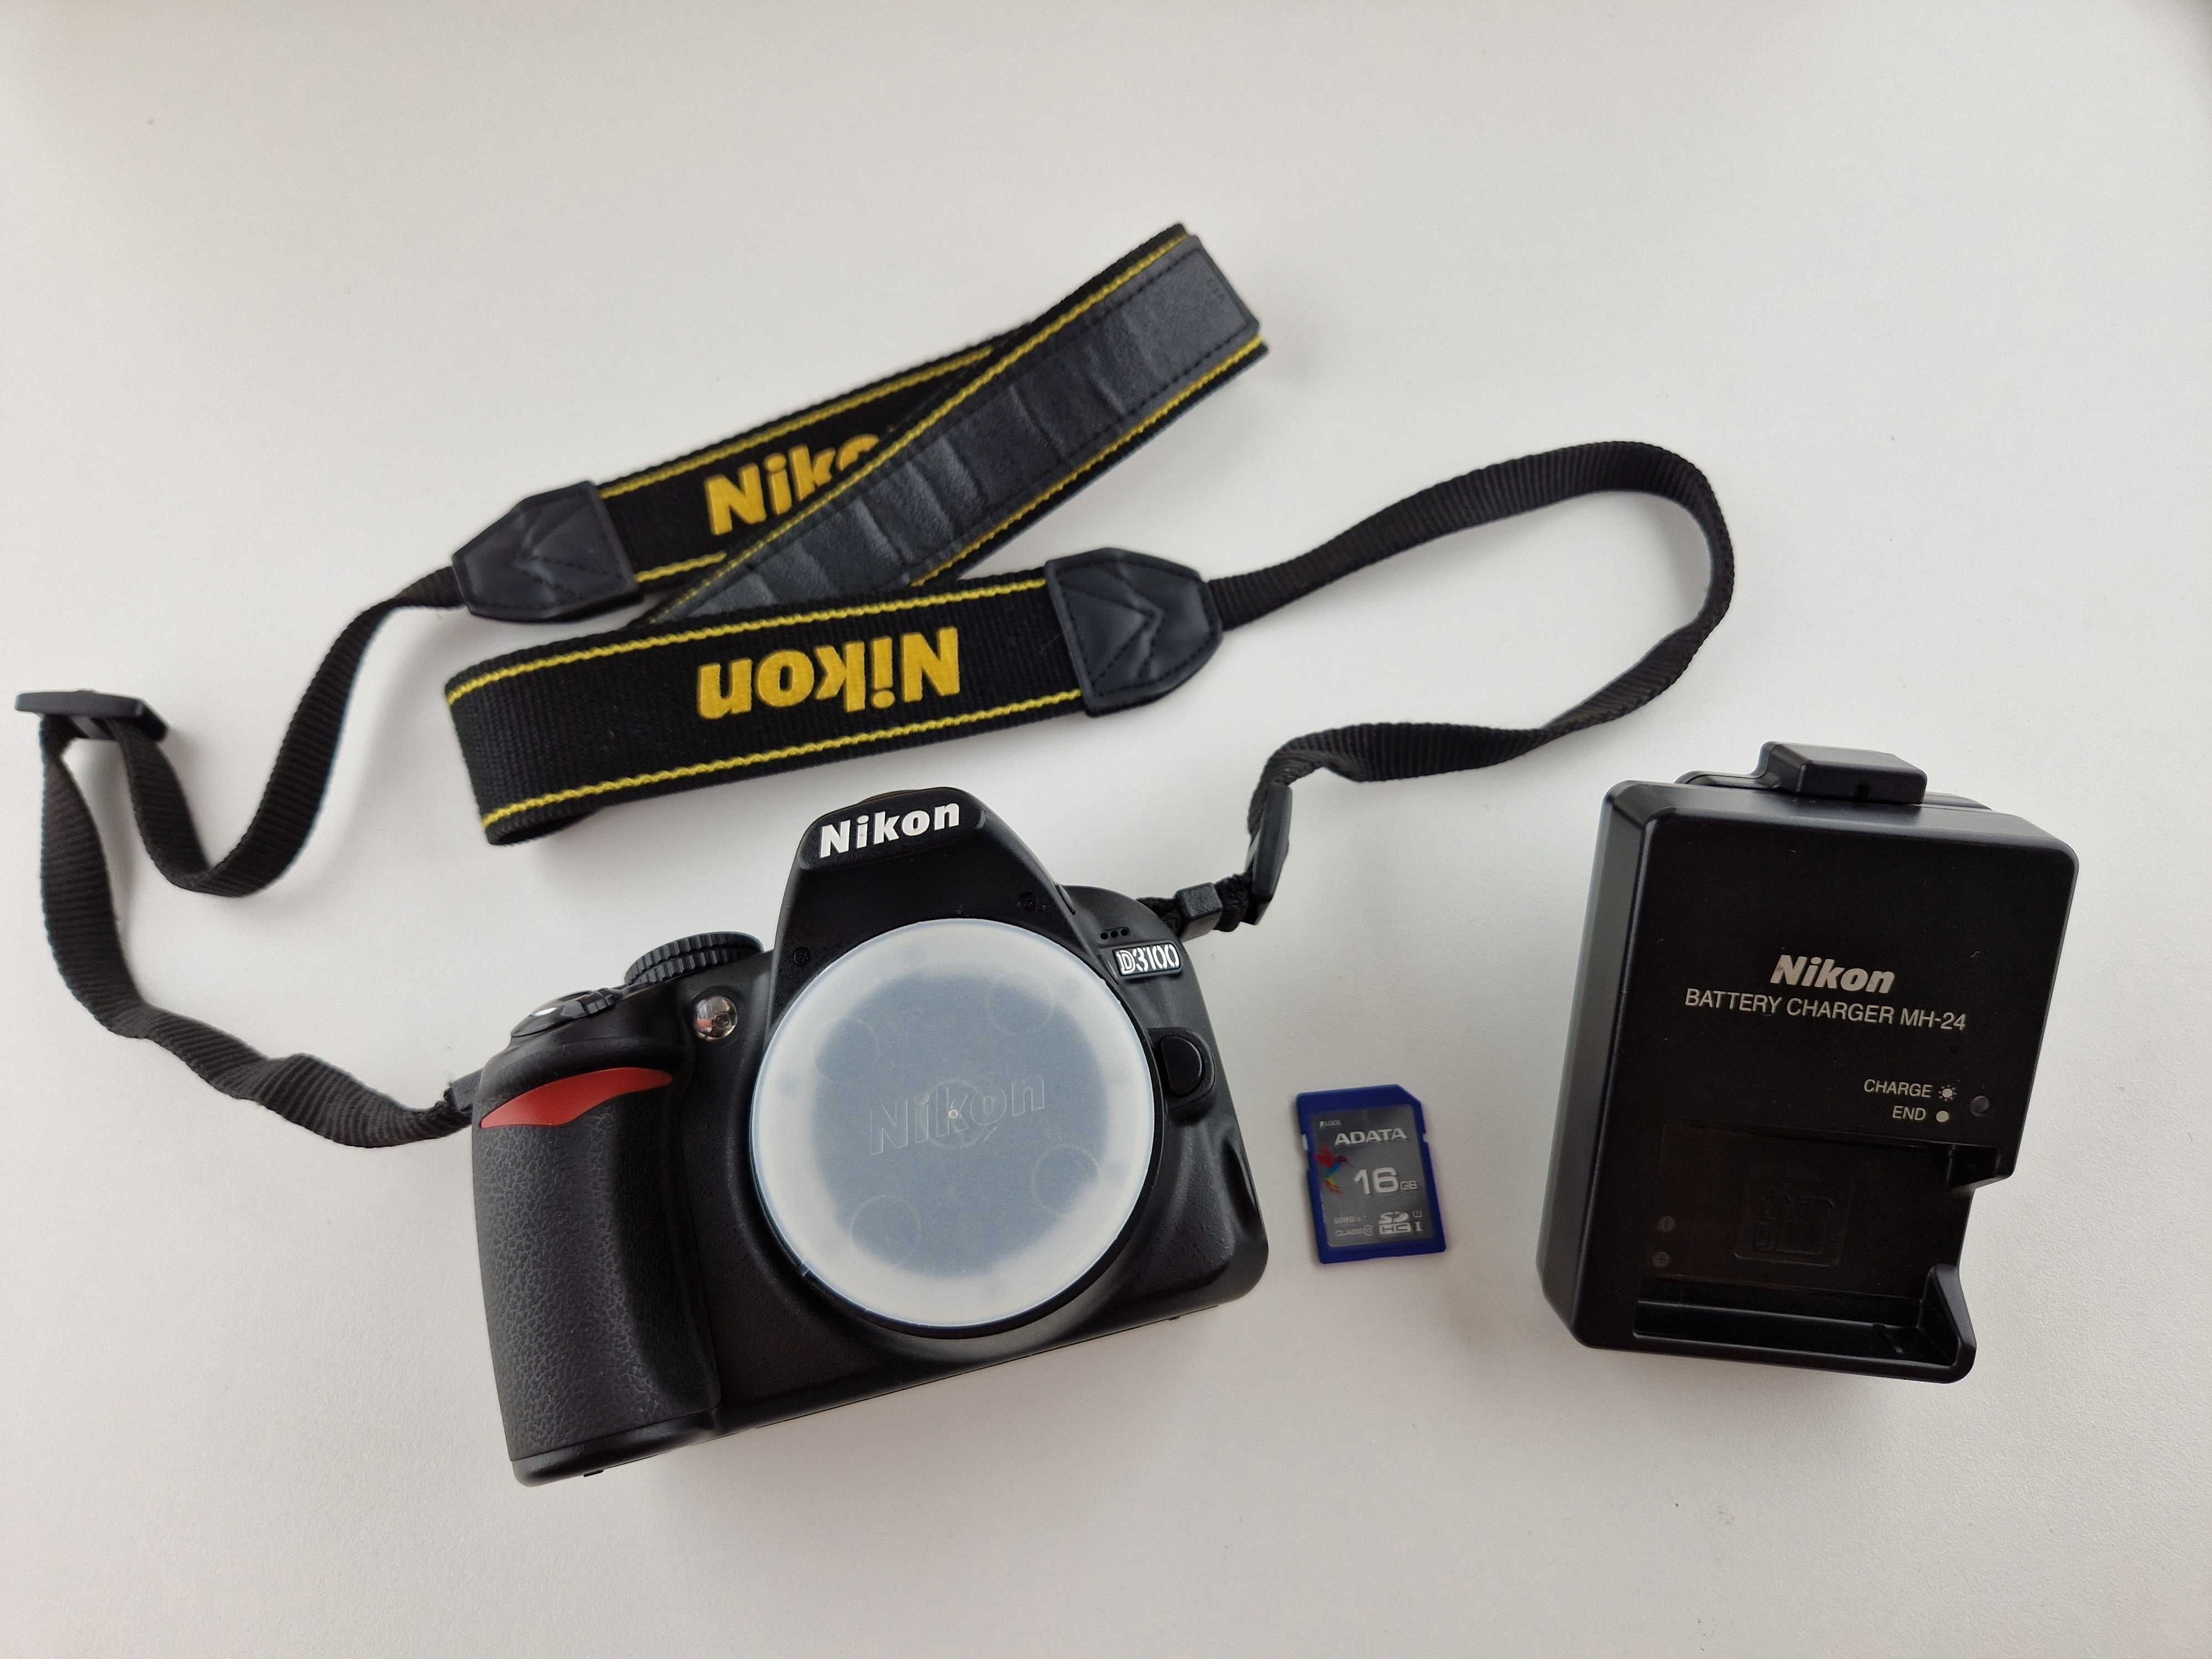 .Aparat Nikon D3100 body + 16GB - przebieg 18 tys. zdjęć - jak nowy!